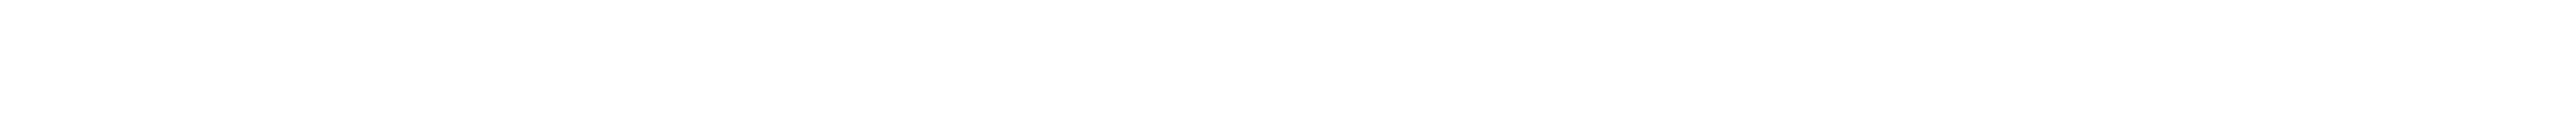 In partnership logos 